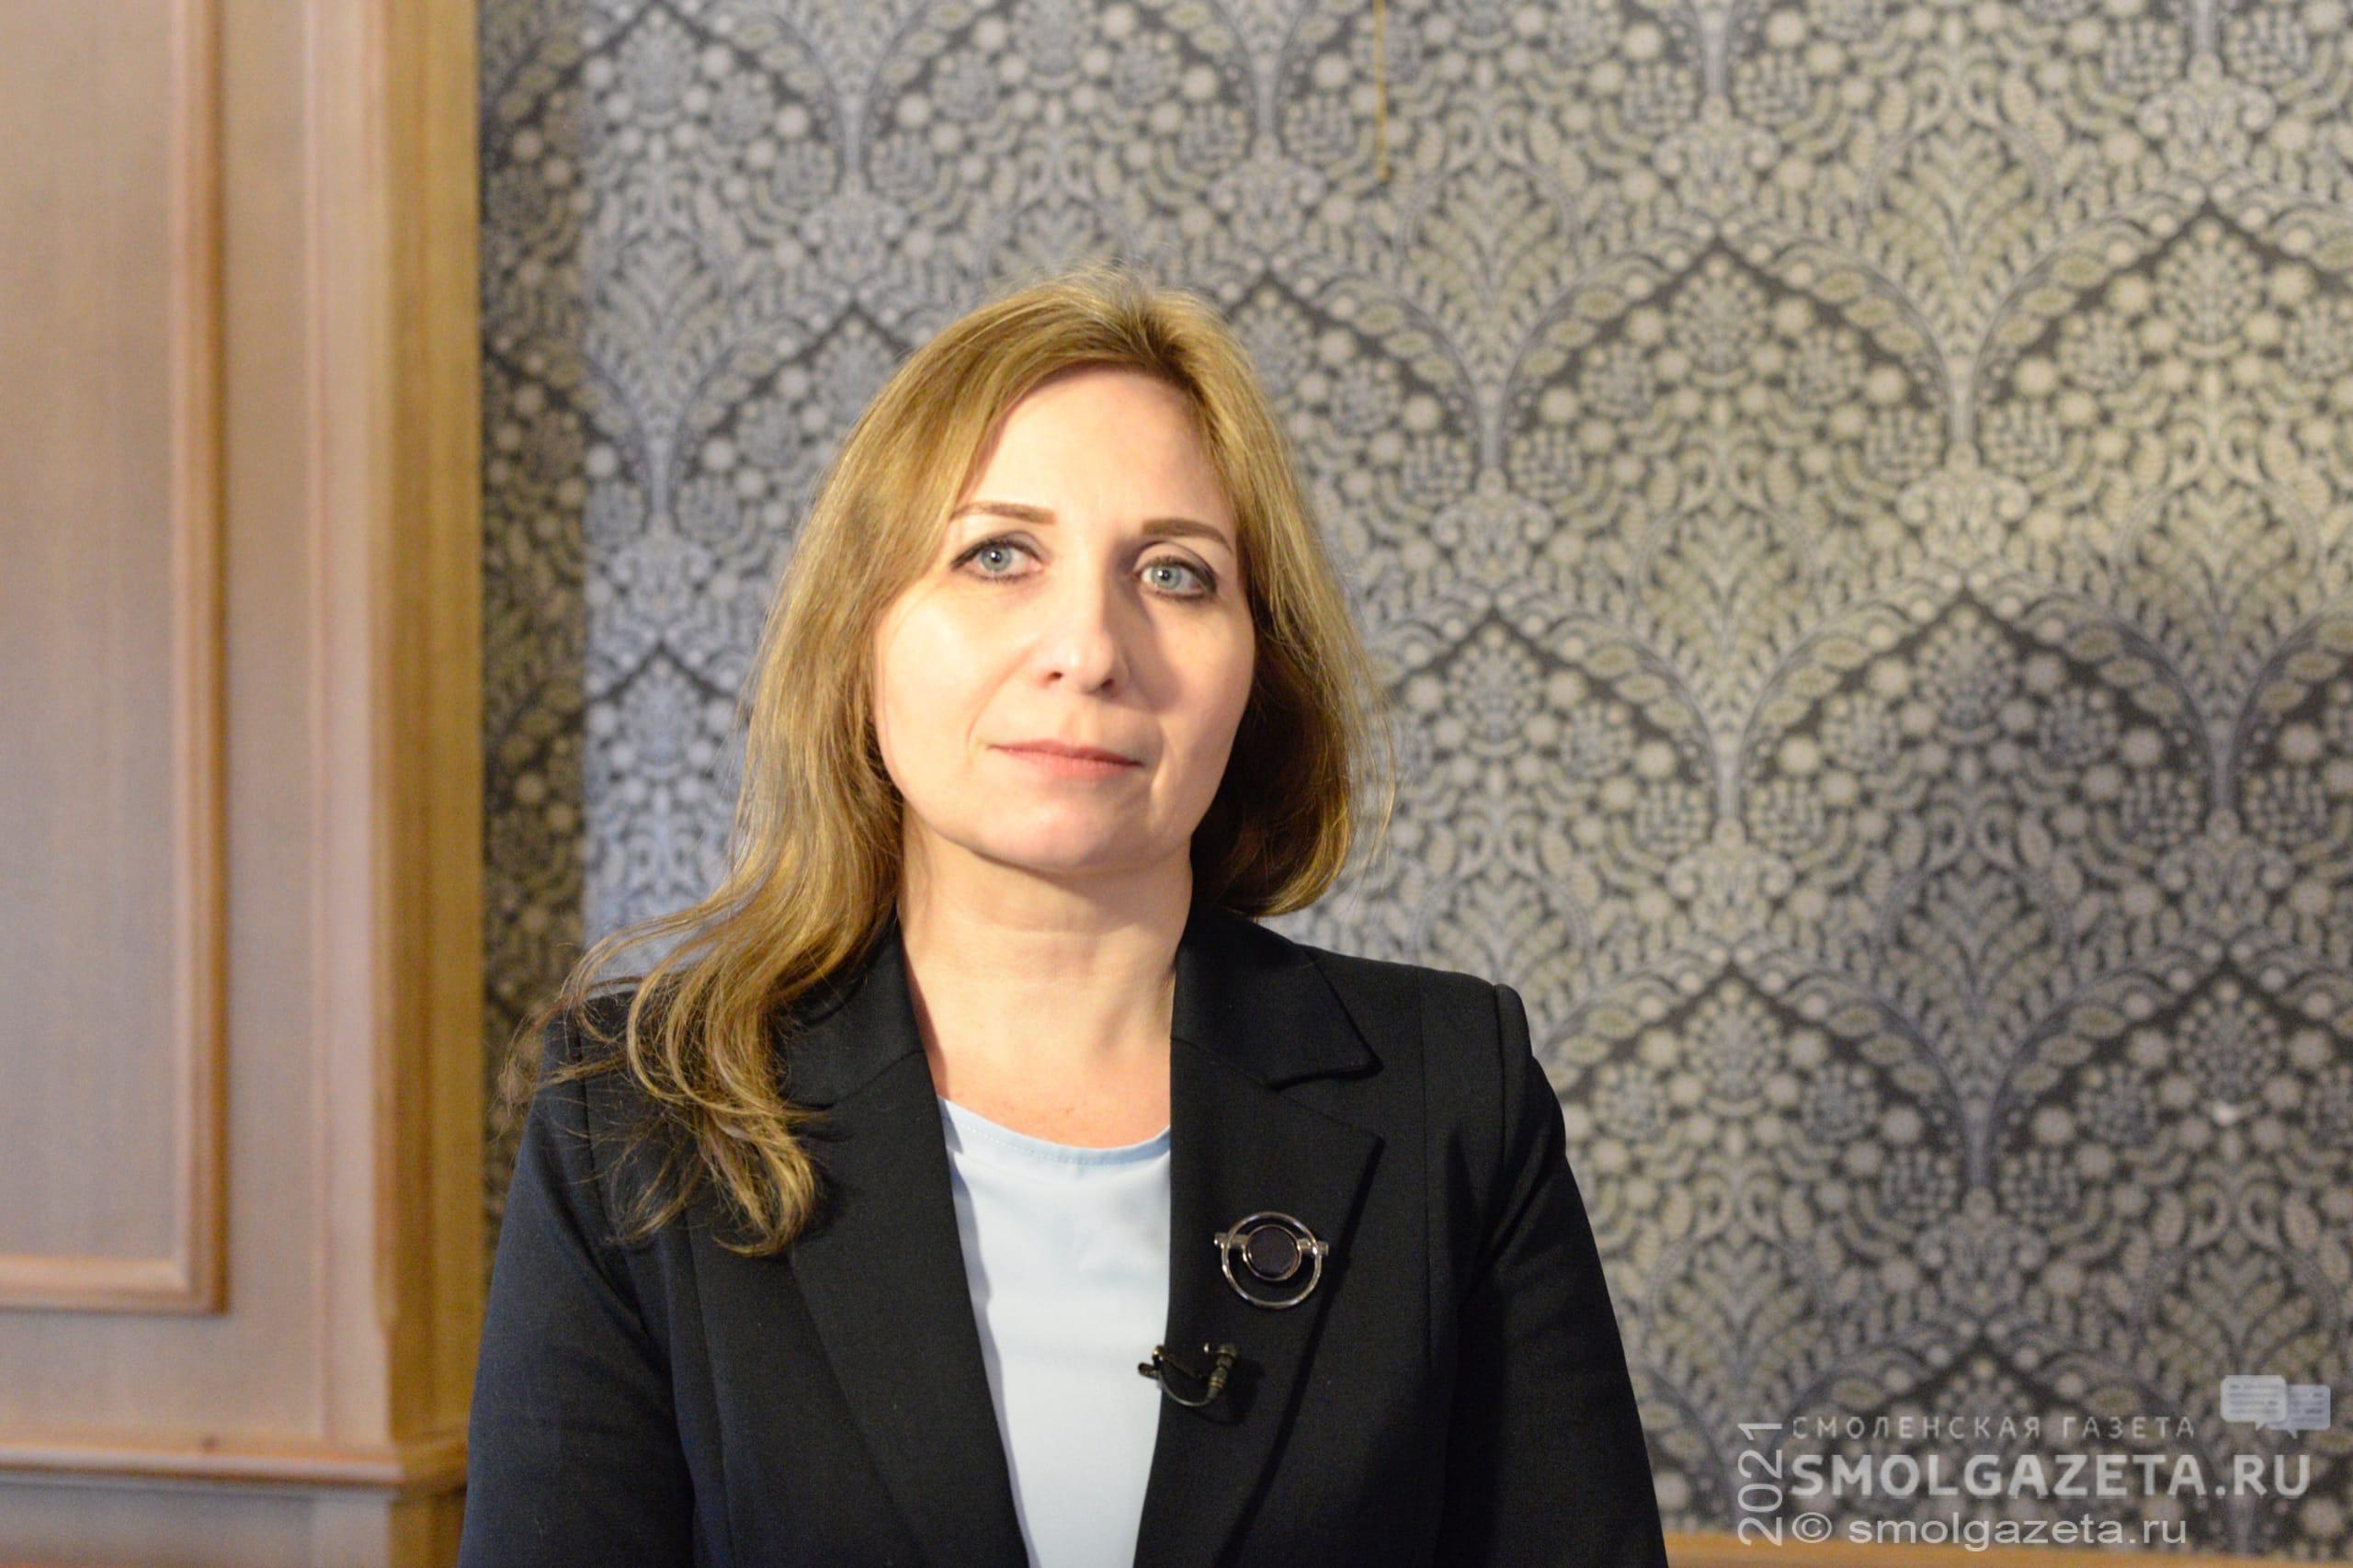 Член Общественной палаты РФ Марина Проскурнина прокомментировала события на Донбассе